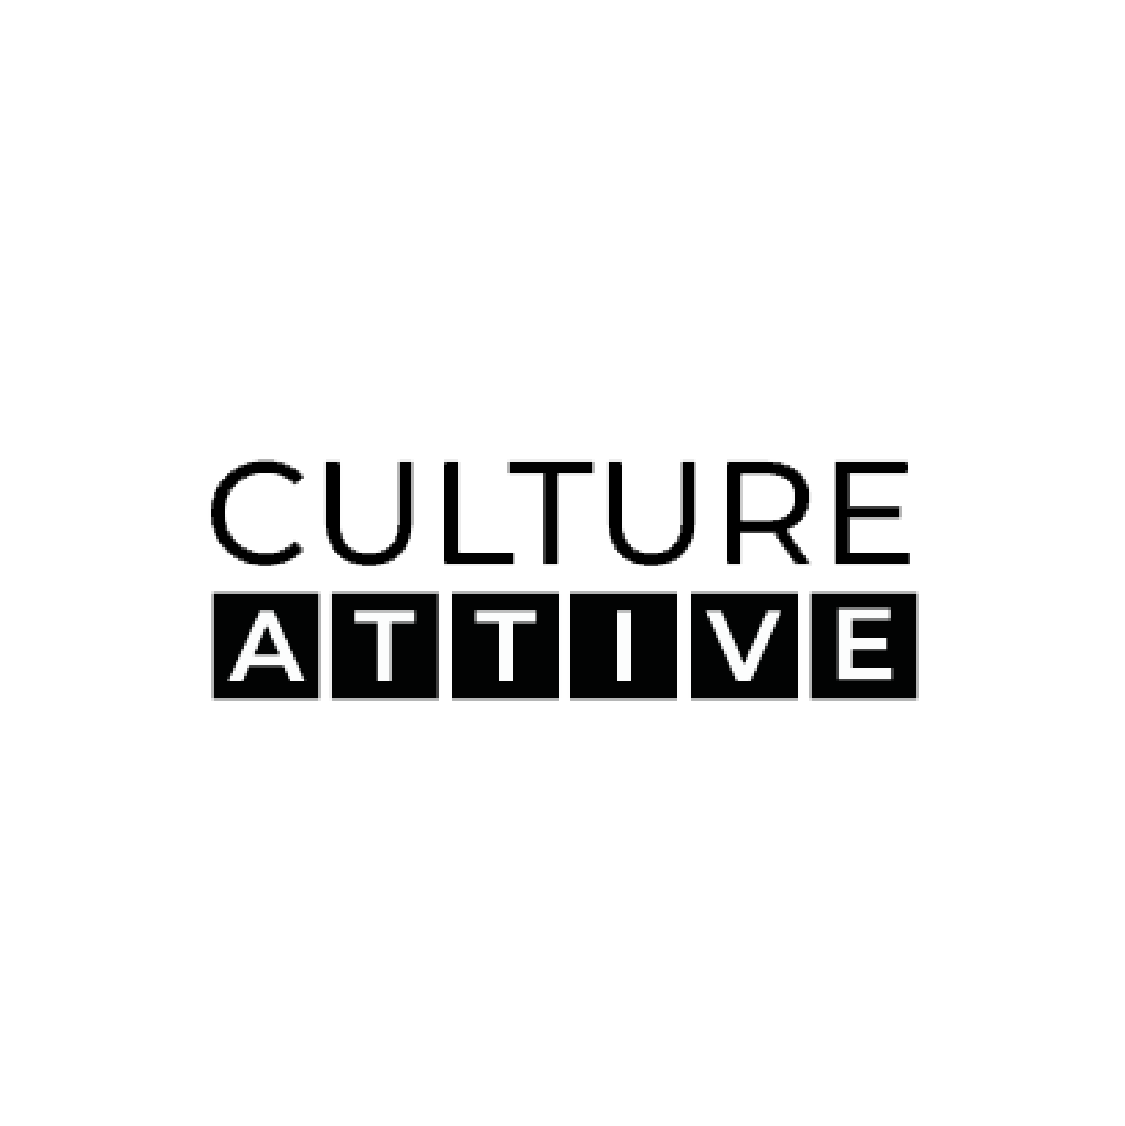 Culture attive